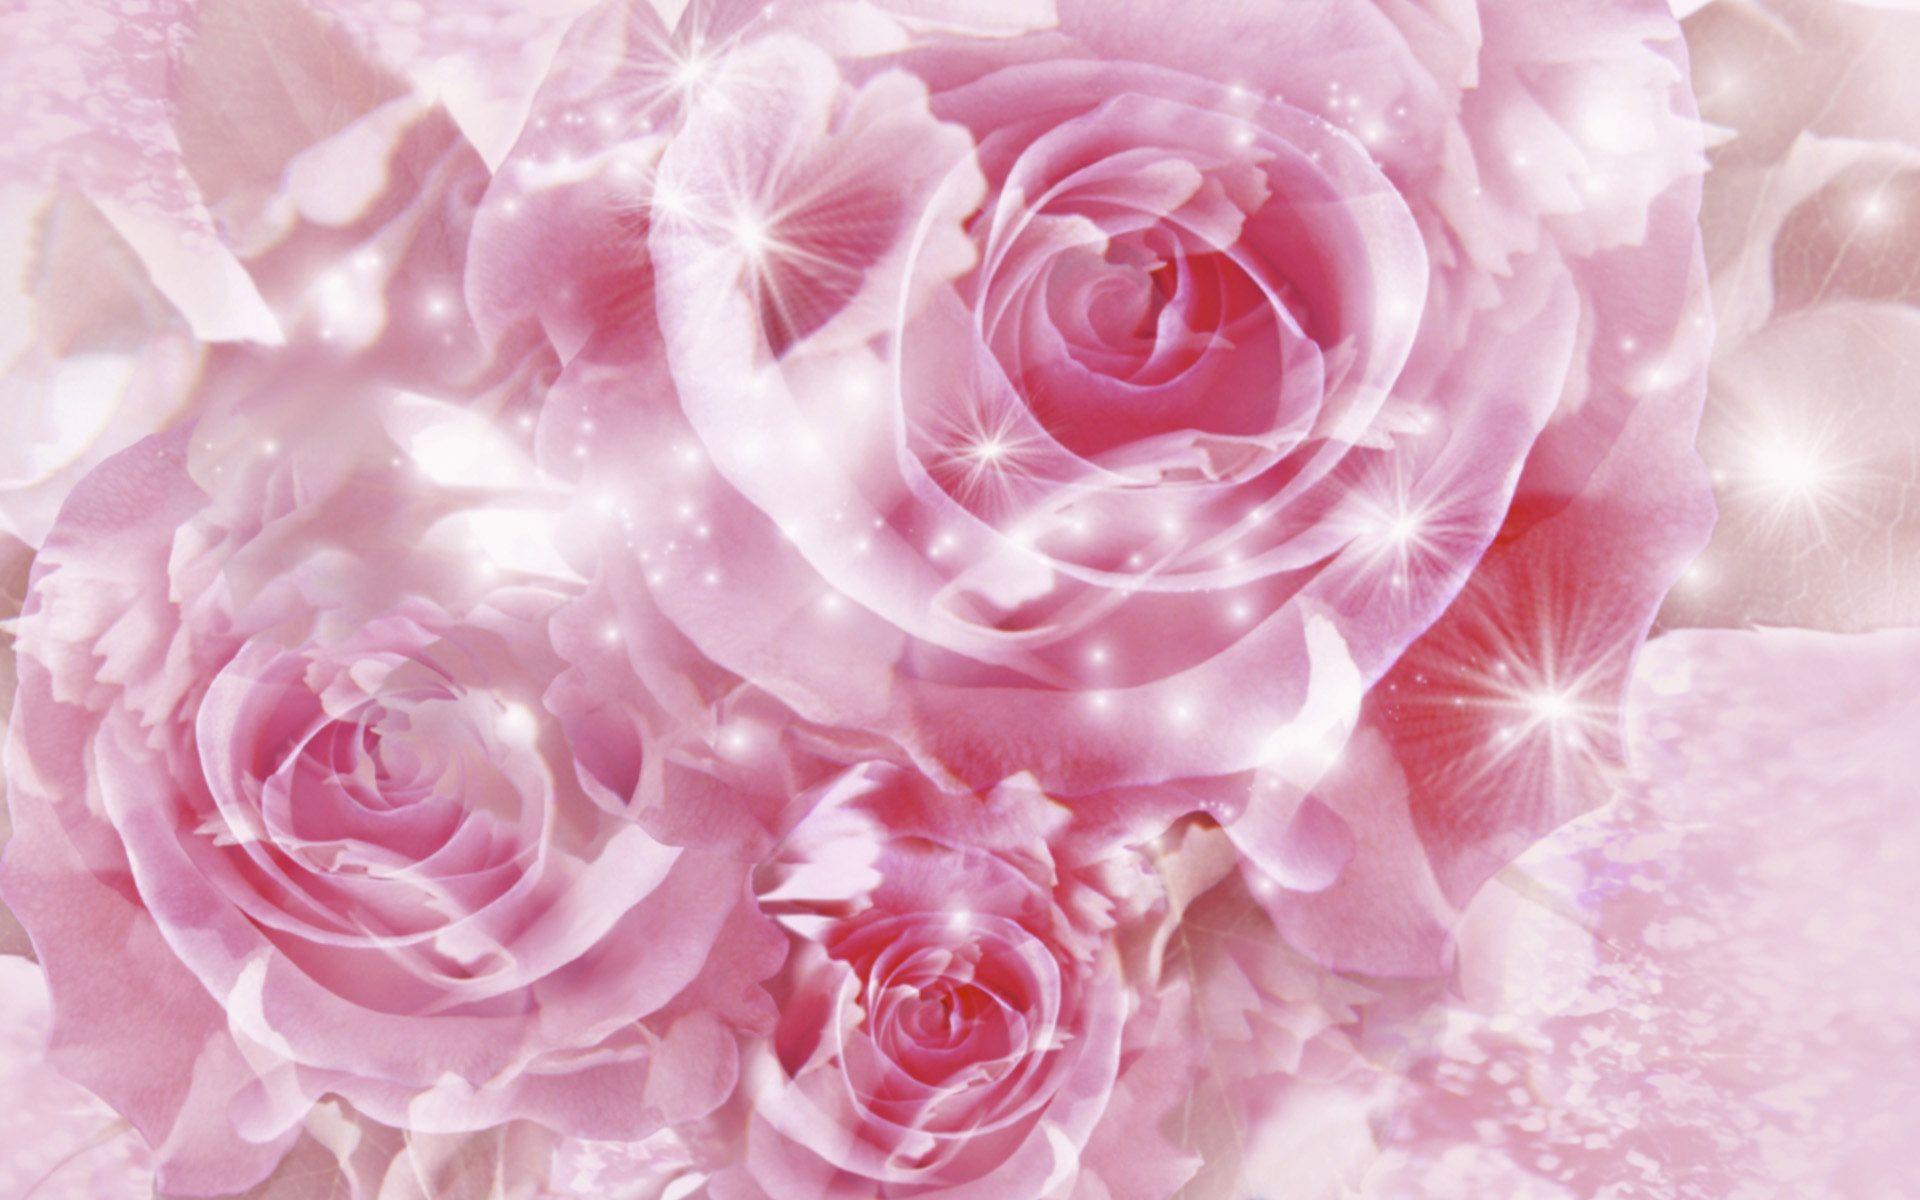 Roses Background: Các bức ảnh của bạn cần thêm bản vẽ hoàn hảo? Hãy chọn hình nền Hoa hồng, những bông hoa đầy màu sắc, xinh đẹp sẽ mang lại sự tươi mới cho tin nhắn của bạn.